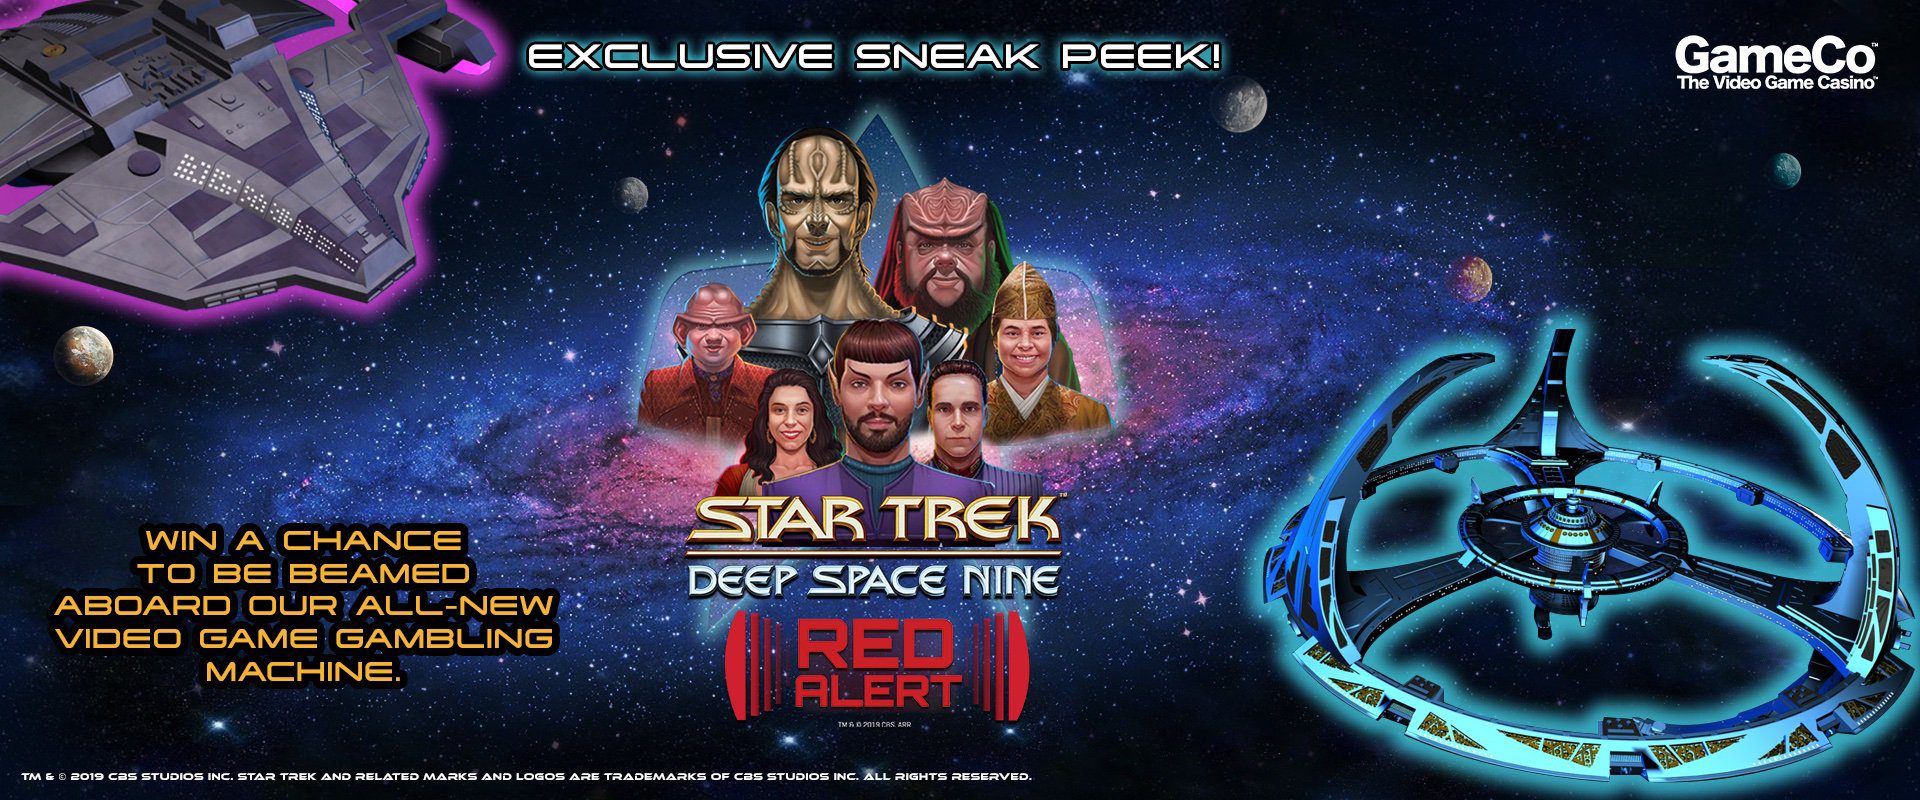 Star Trek: Deep Space Nine Gets Red Alert Gambling Video Game Machine